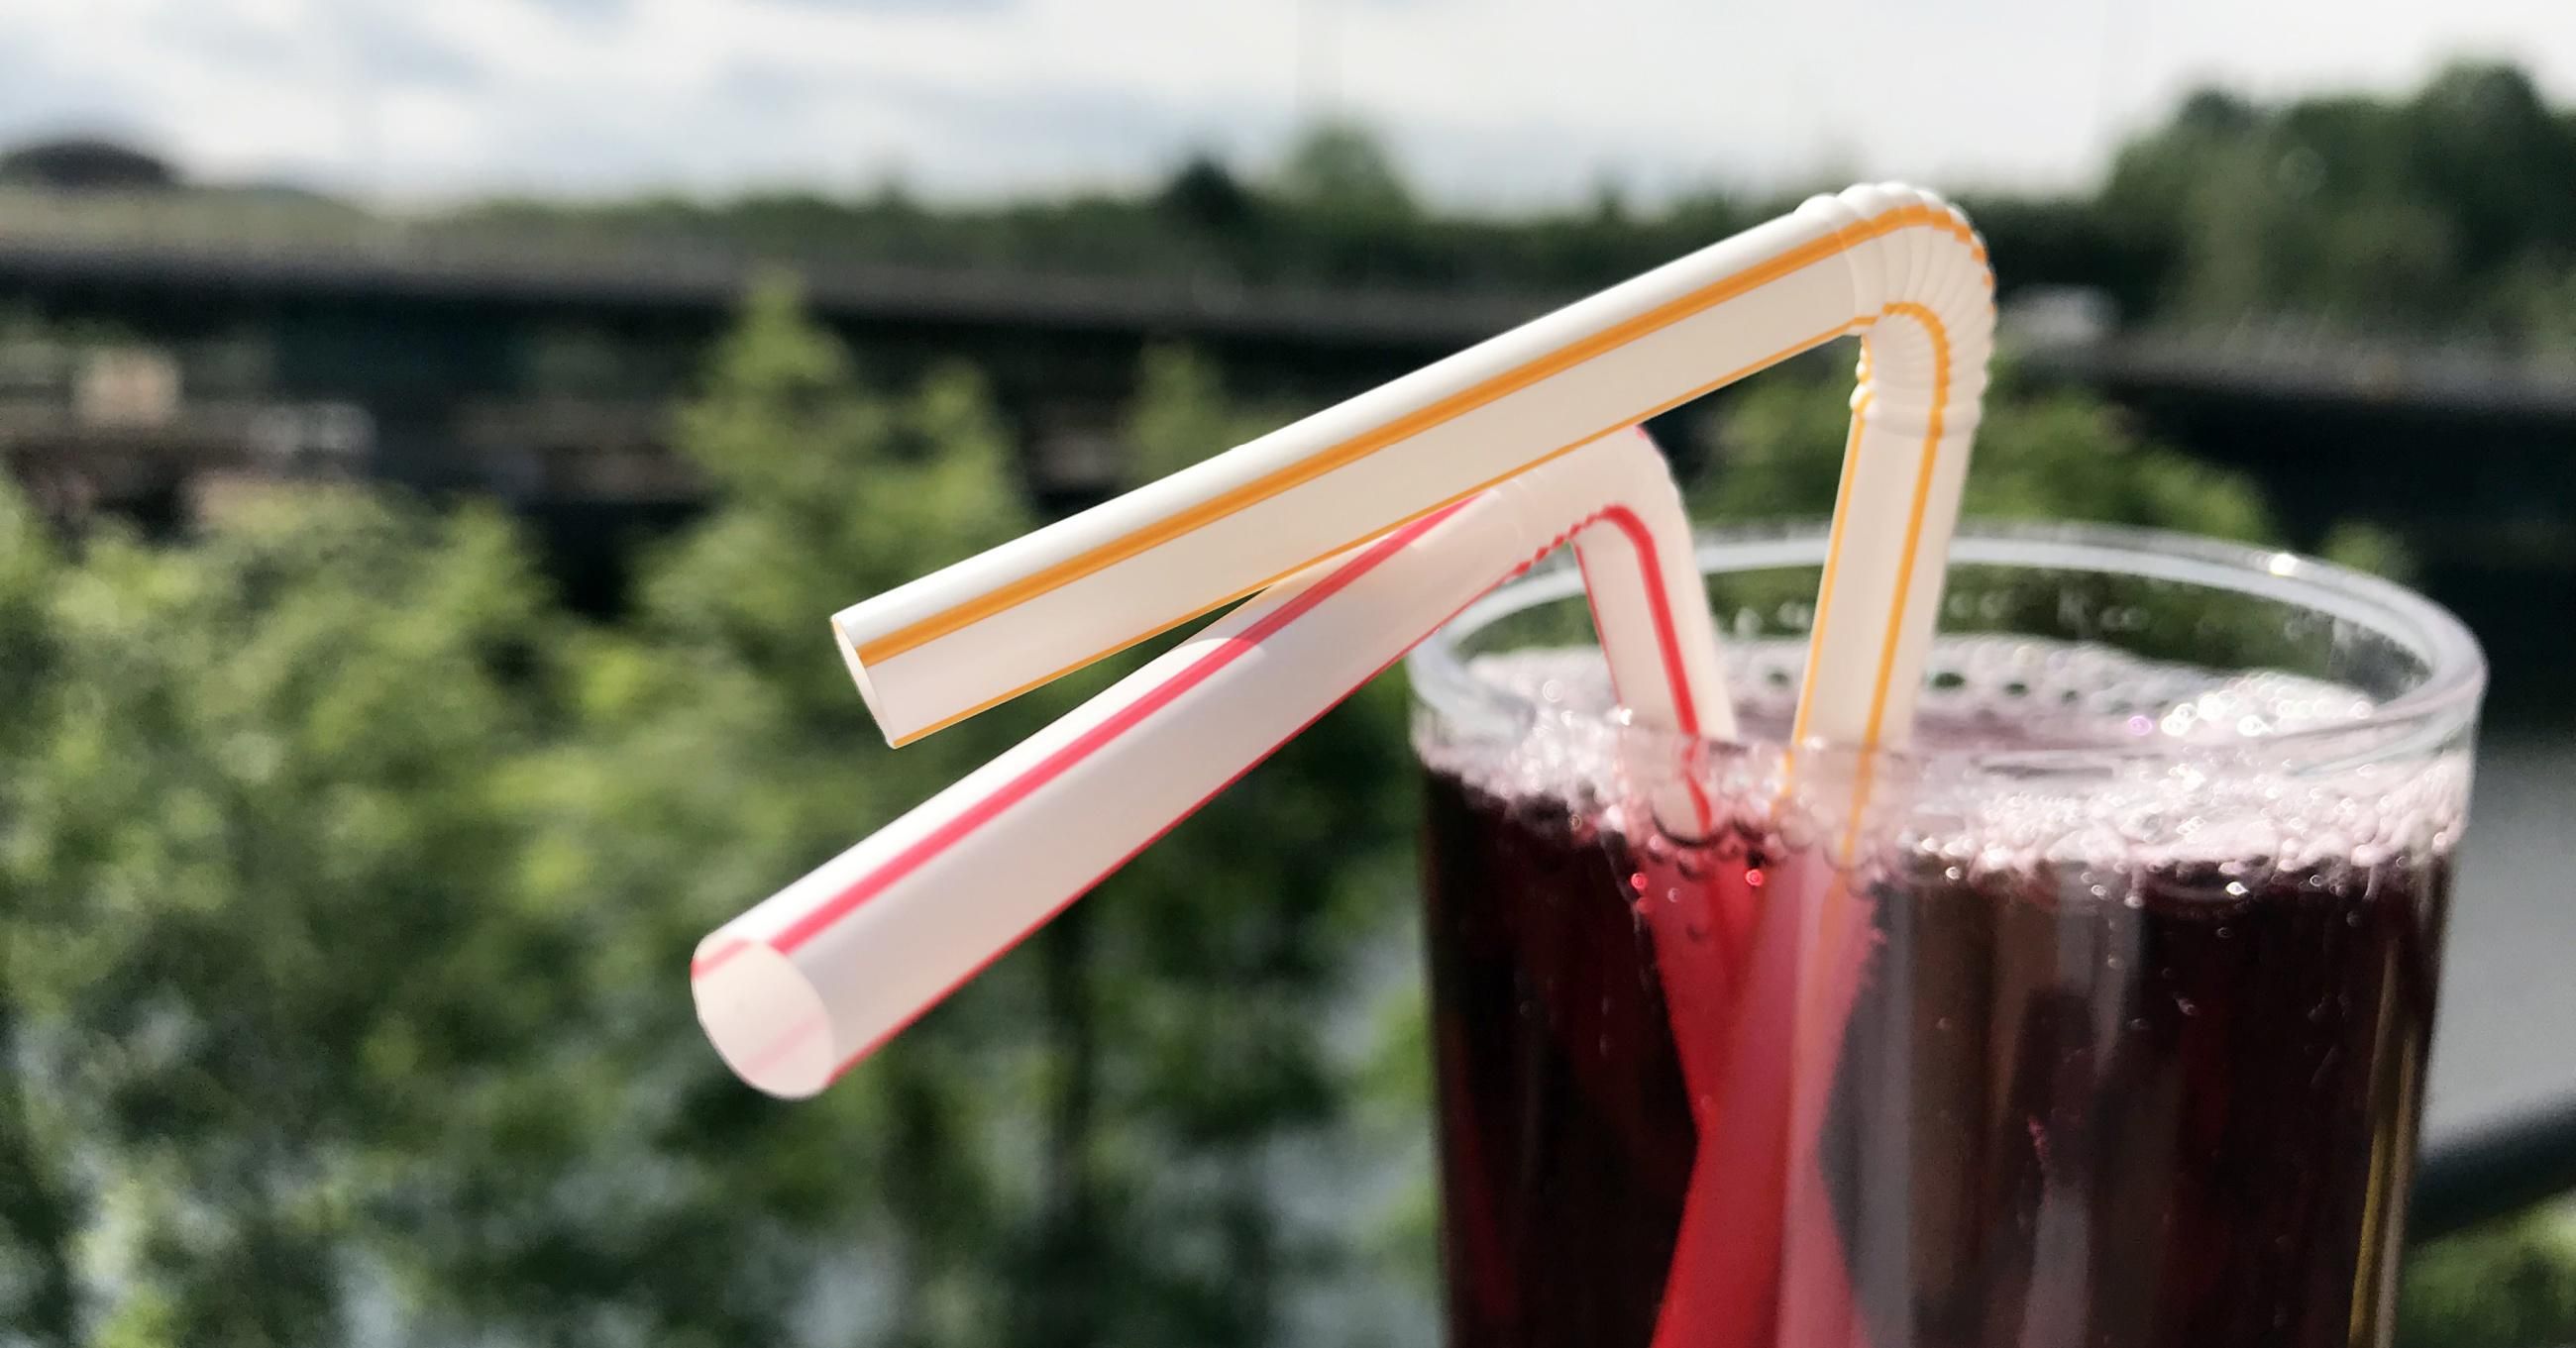 plastic straws in soda